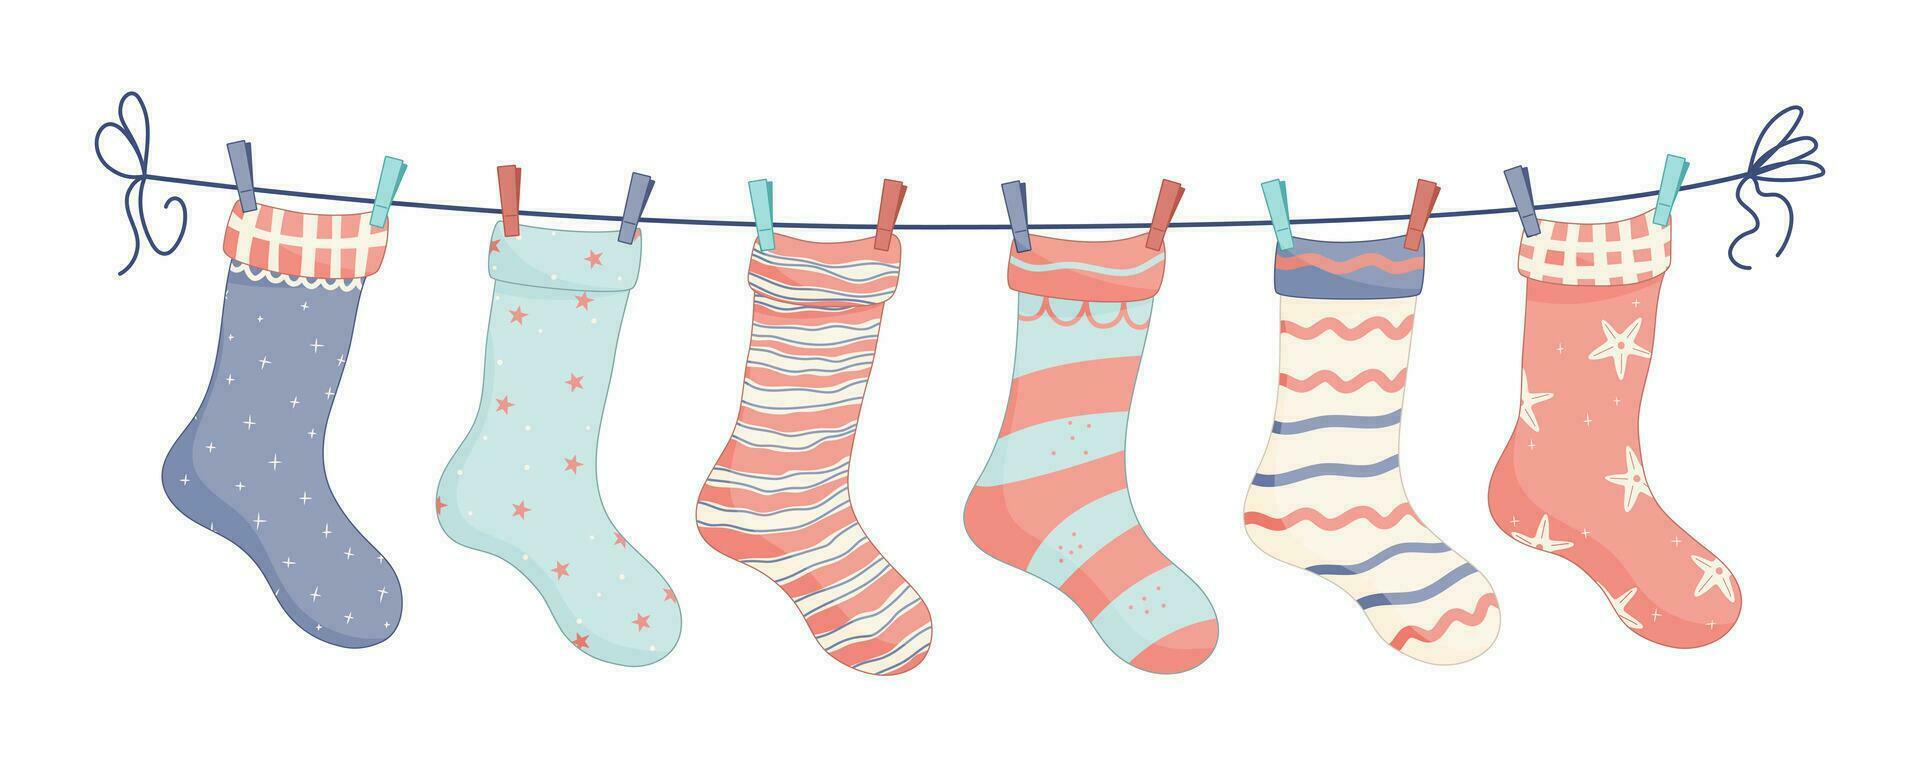 sokken met texturen en patronen met gekleurde wasknijpers. vector illustratie